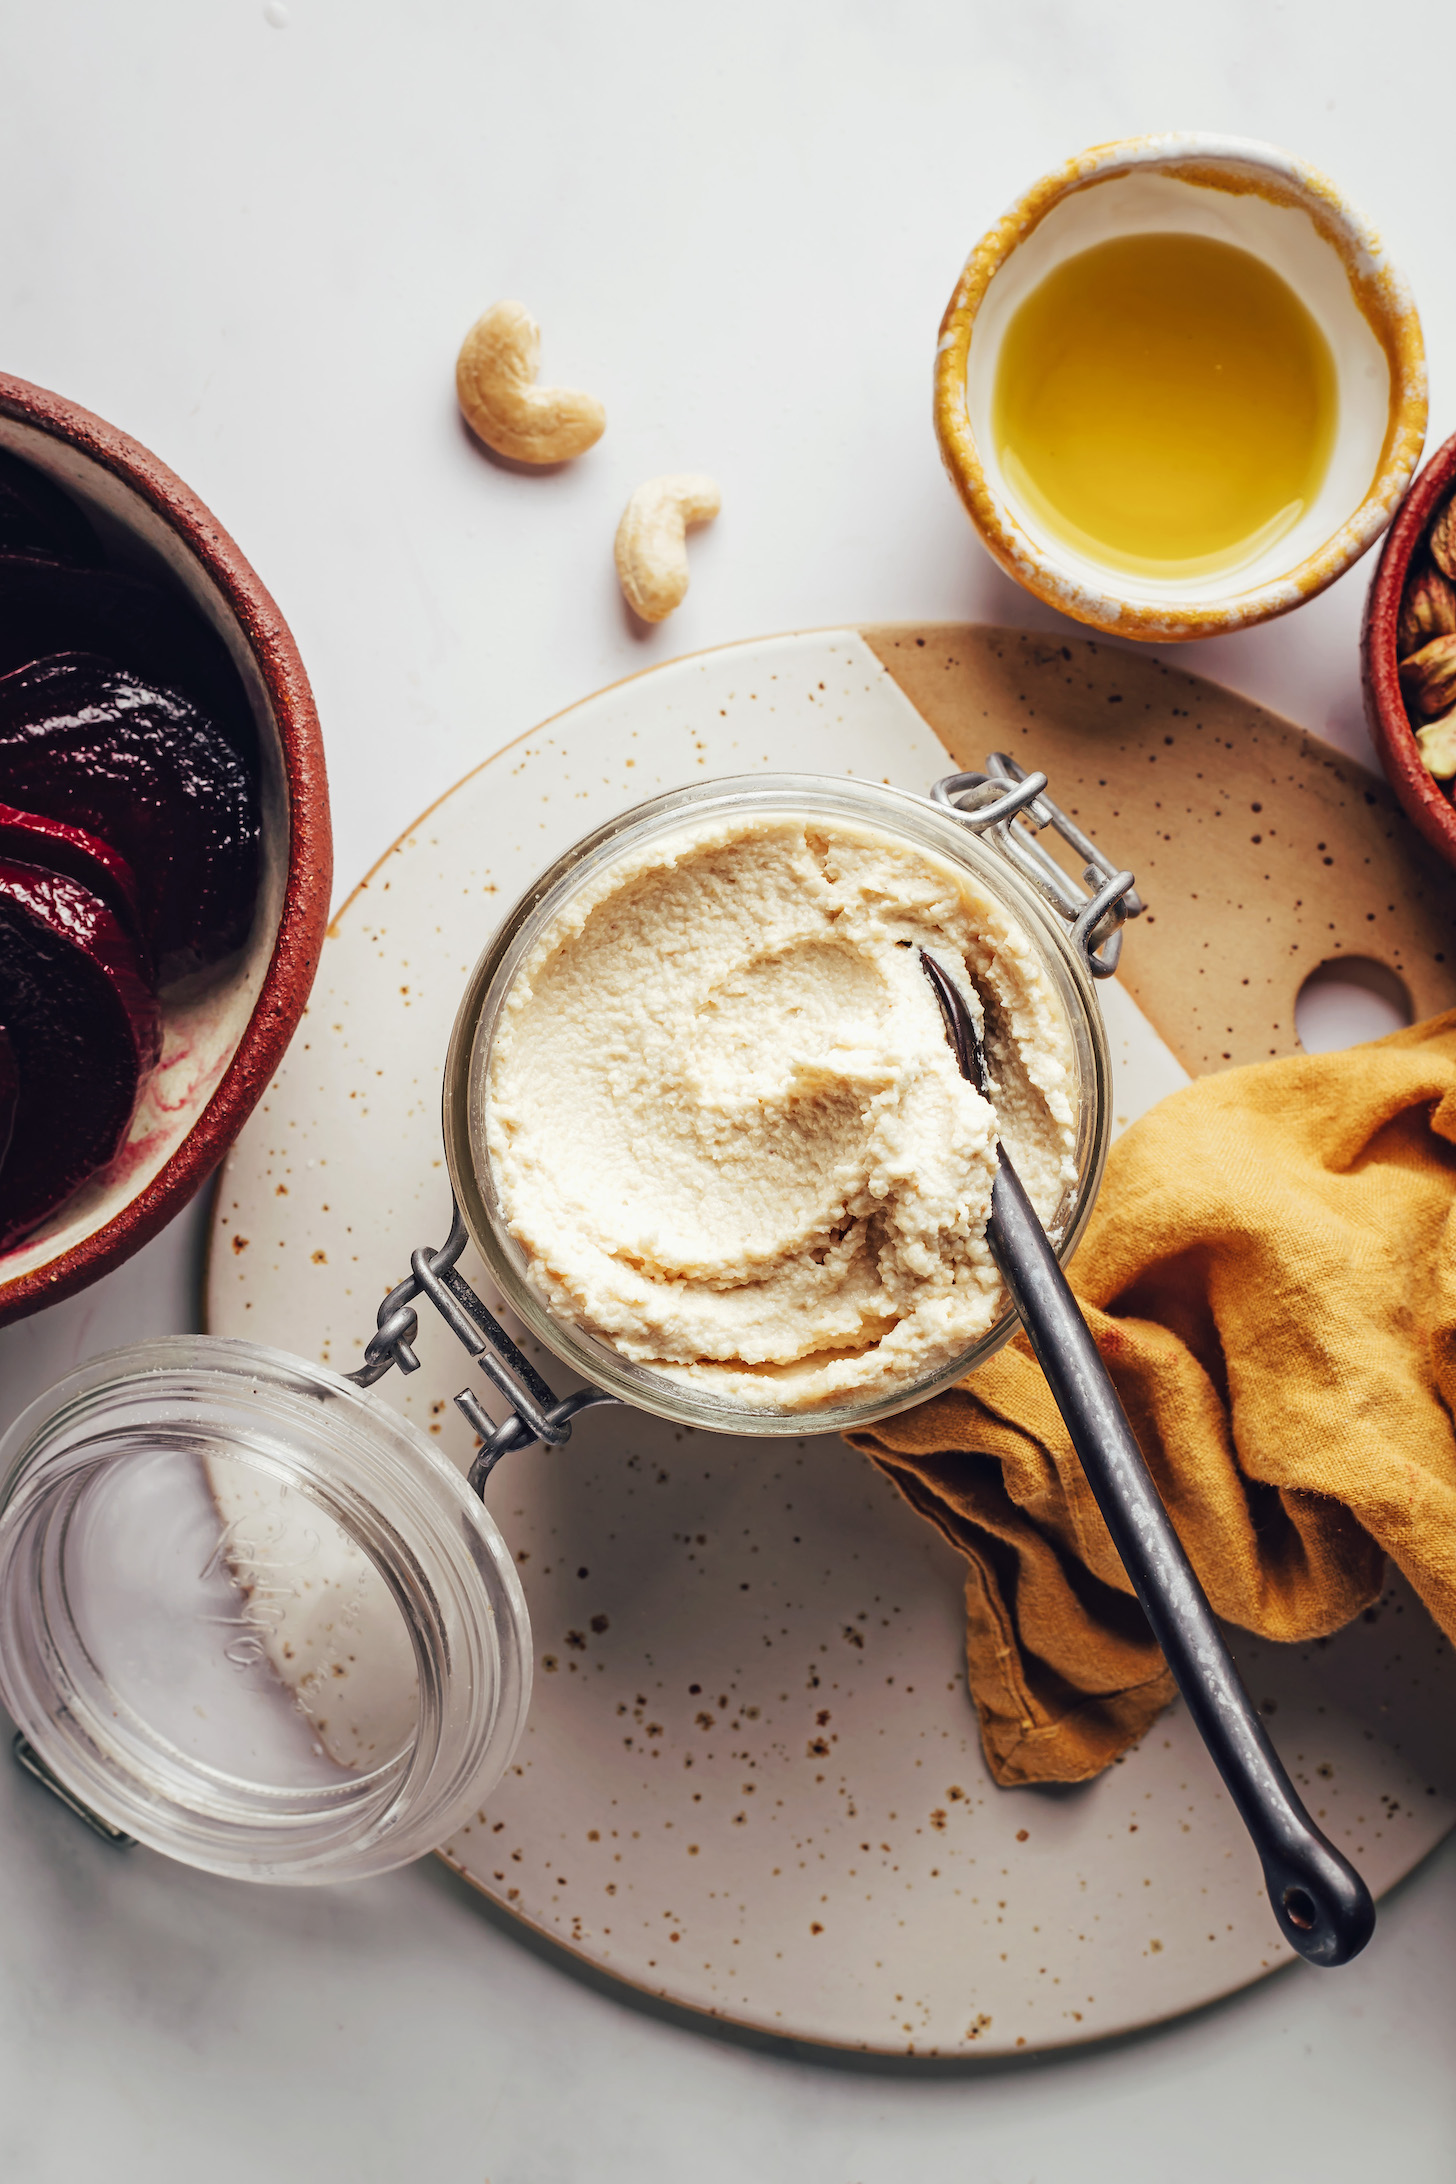 Fotografía cenital de tazones de aceite de oliva, anacardos y remolachas asadas, además de una cuchara en un frasco de queso de cabra vegano casero